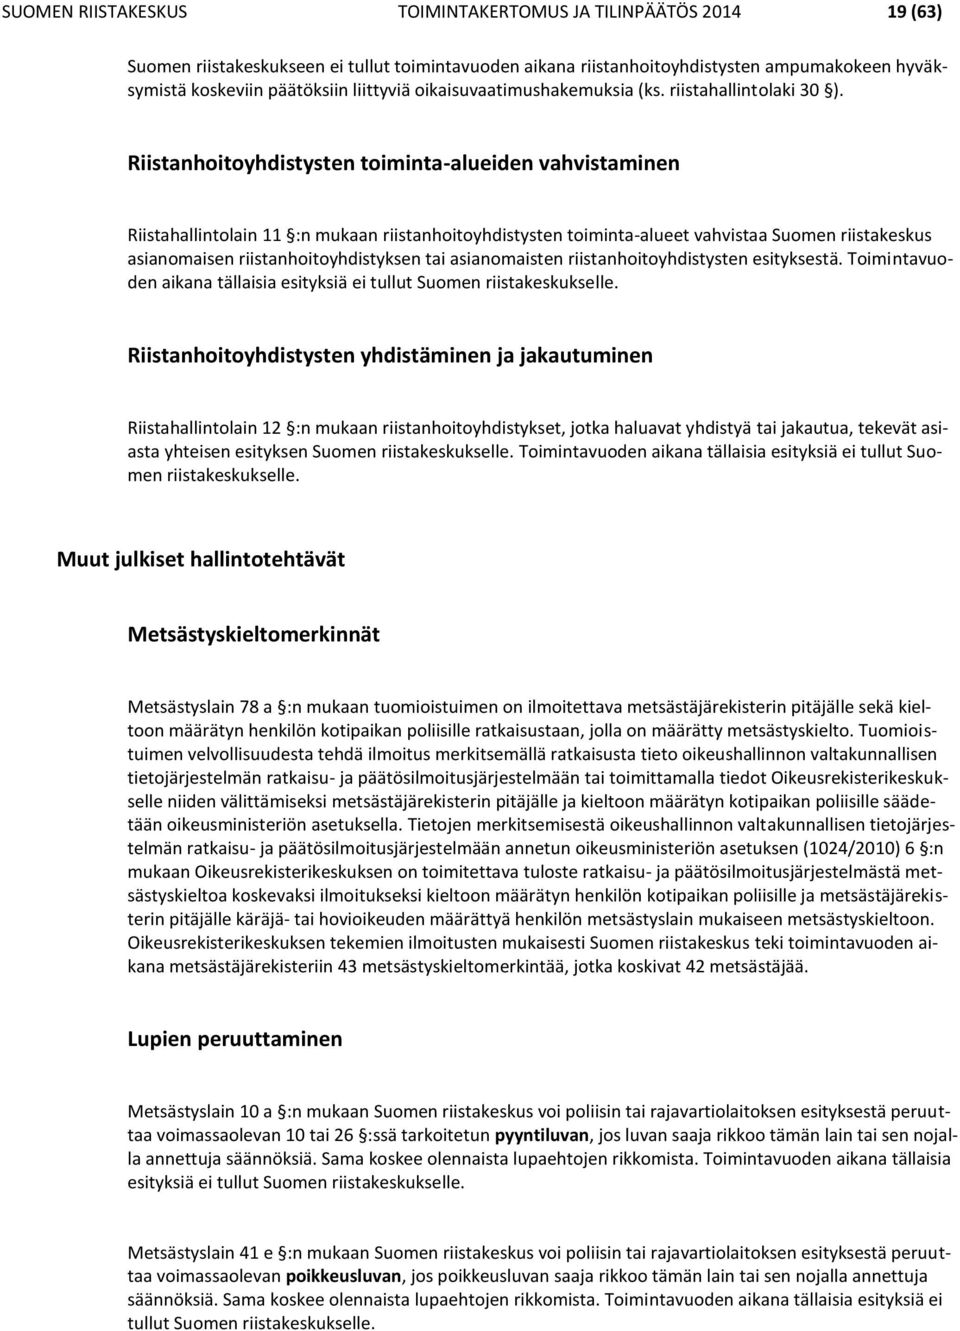 Riistanhoitoyhdistysten toiminta-alueiden vahvistaminen Riistahallintolain 11 :n mukaan riistanhoitoyhdistysten toiminta-alueet vahvistaa Suomen riistakeskus asianomaisen riistanhoitoyhdistyksen tai